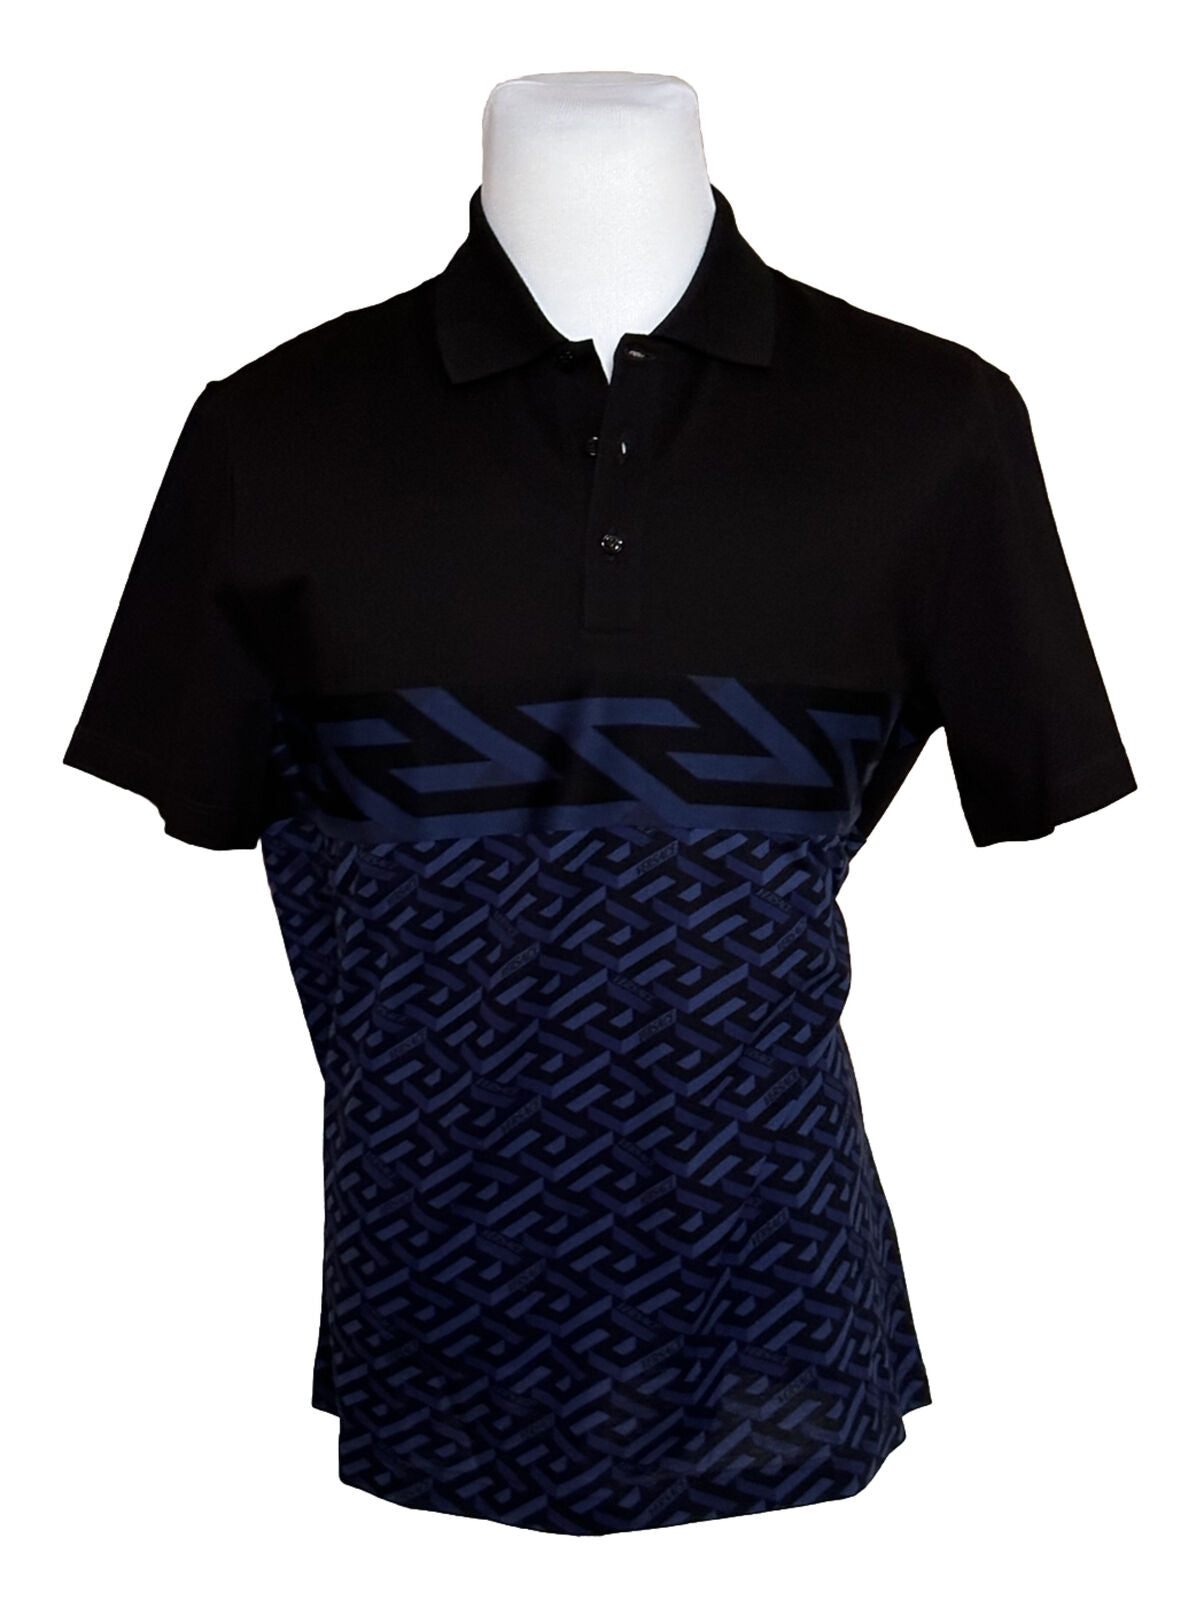 NWT $900 Versace Piquet Greca Signature Синяя/Черная рубашка-поло 2XL 1006468 Италия